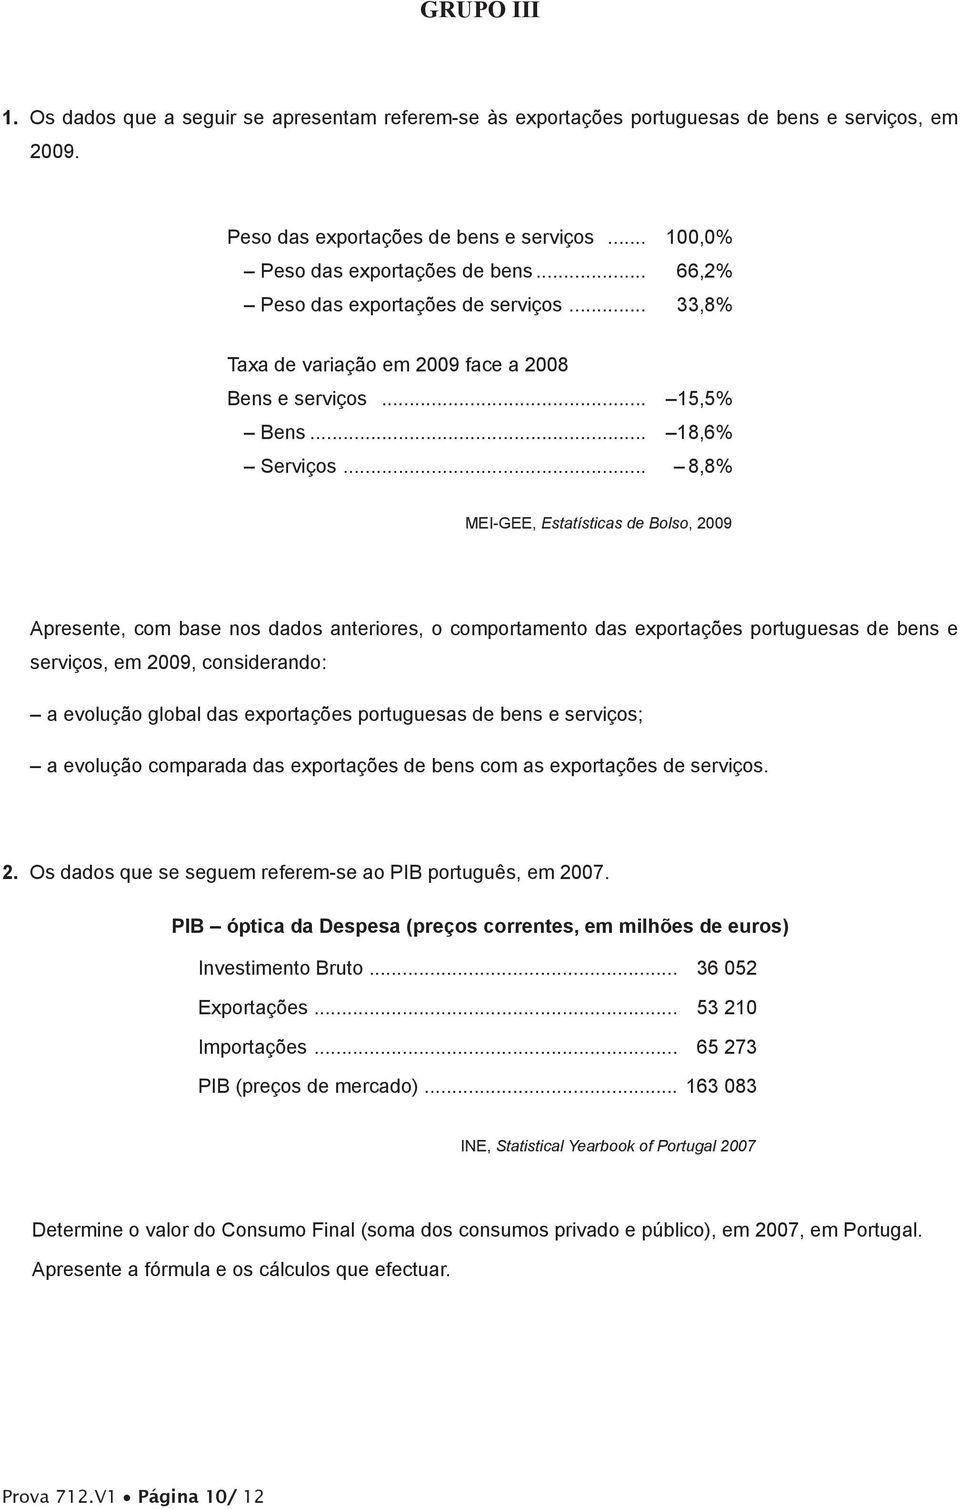 .. 8,8% MEI-GEE, Estatísticas de Bolso, 2009 Apresente, com base nos dados anteriores, o comportamento das exportações portuguesas de bens e serviços, em 2009, considerando: a evolução global das